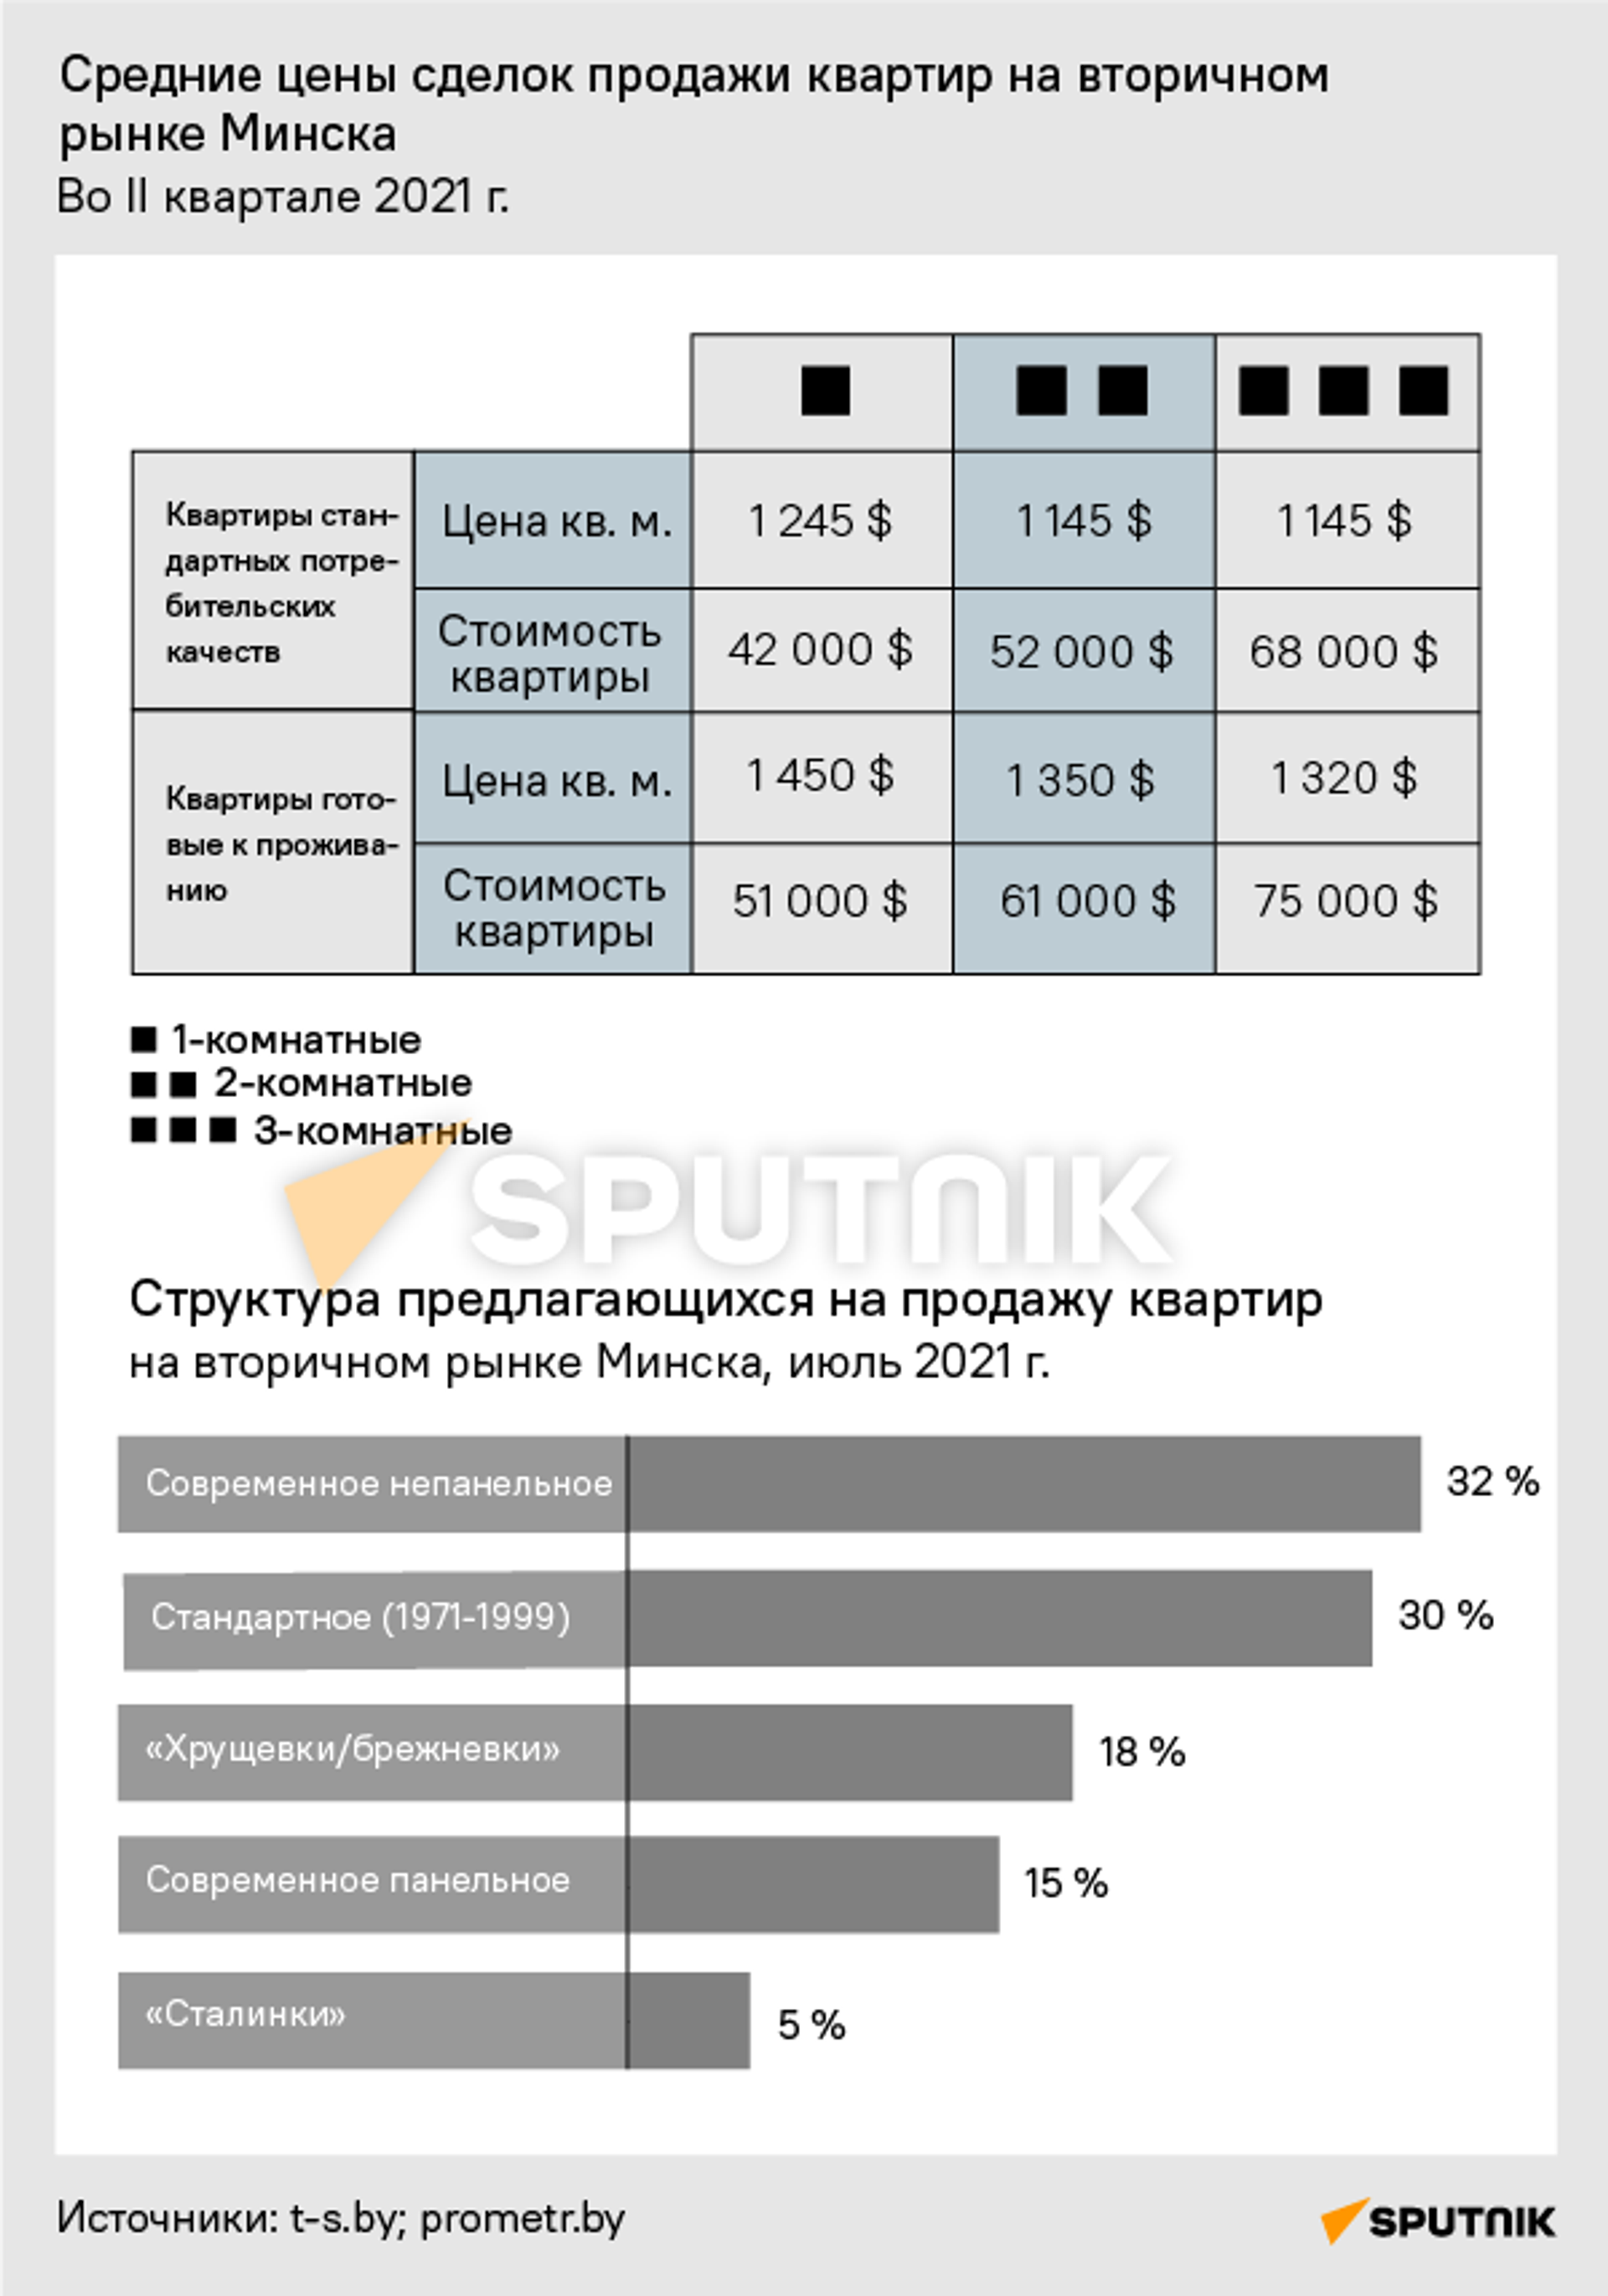 Средние цены сделок - Sputnik Беларусь, 1920, 04.08.2021